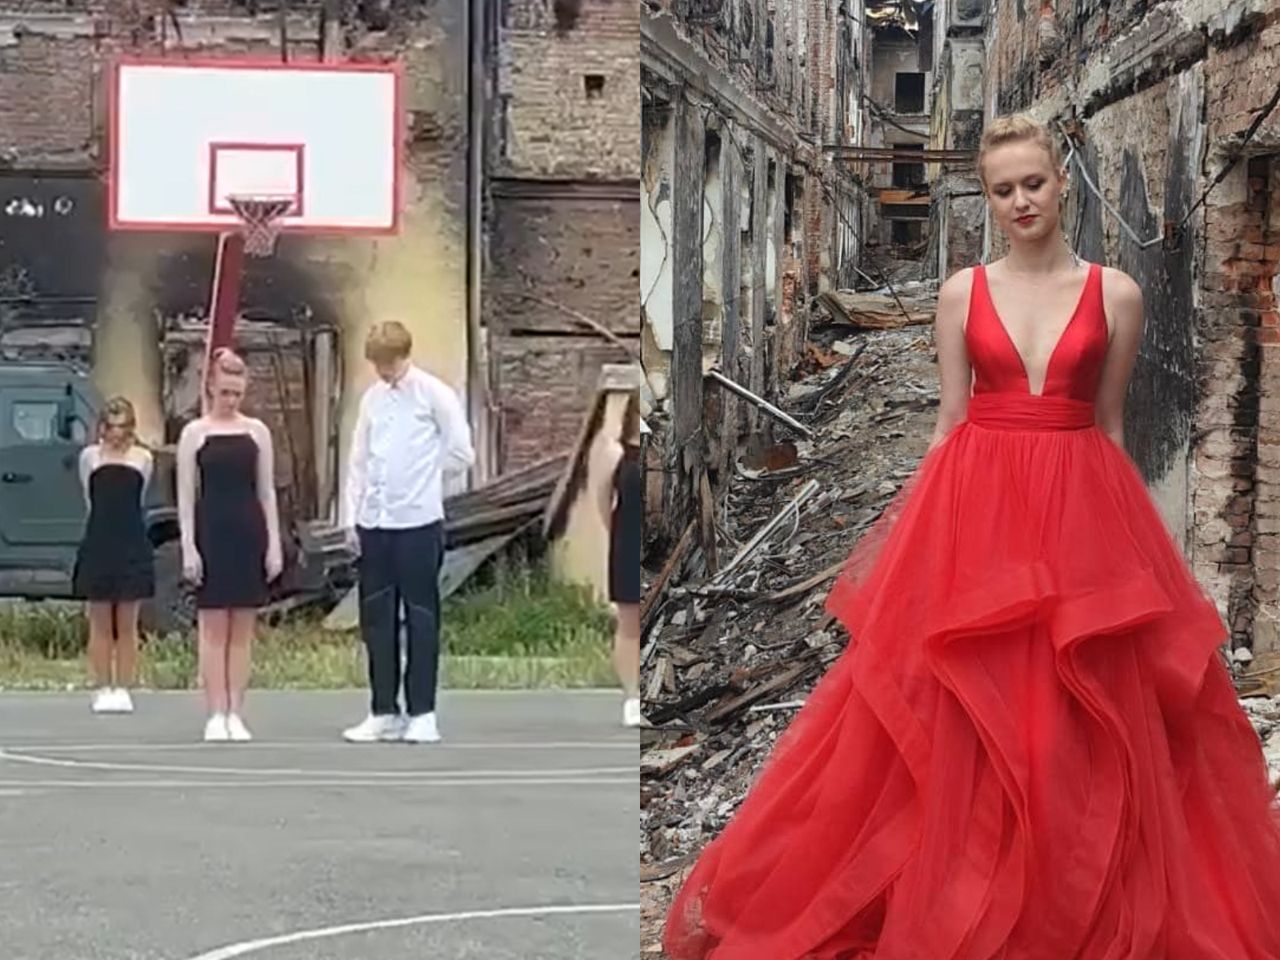 Uczniowie z Charkowa pożegnali szkołę tańcem w ruinach. Nagranie obiegło sieć